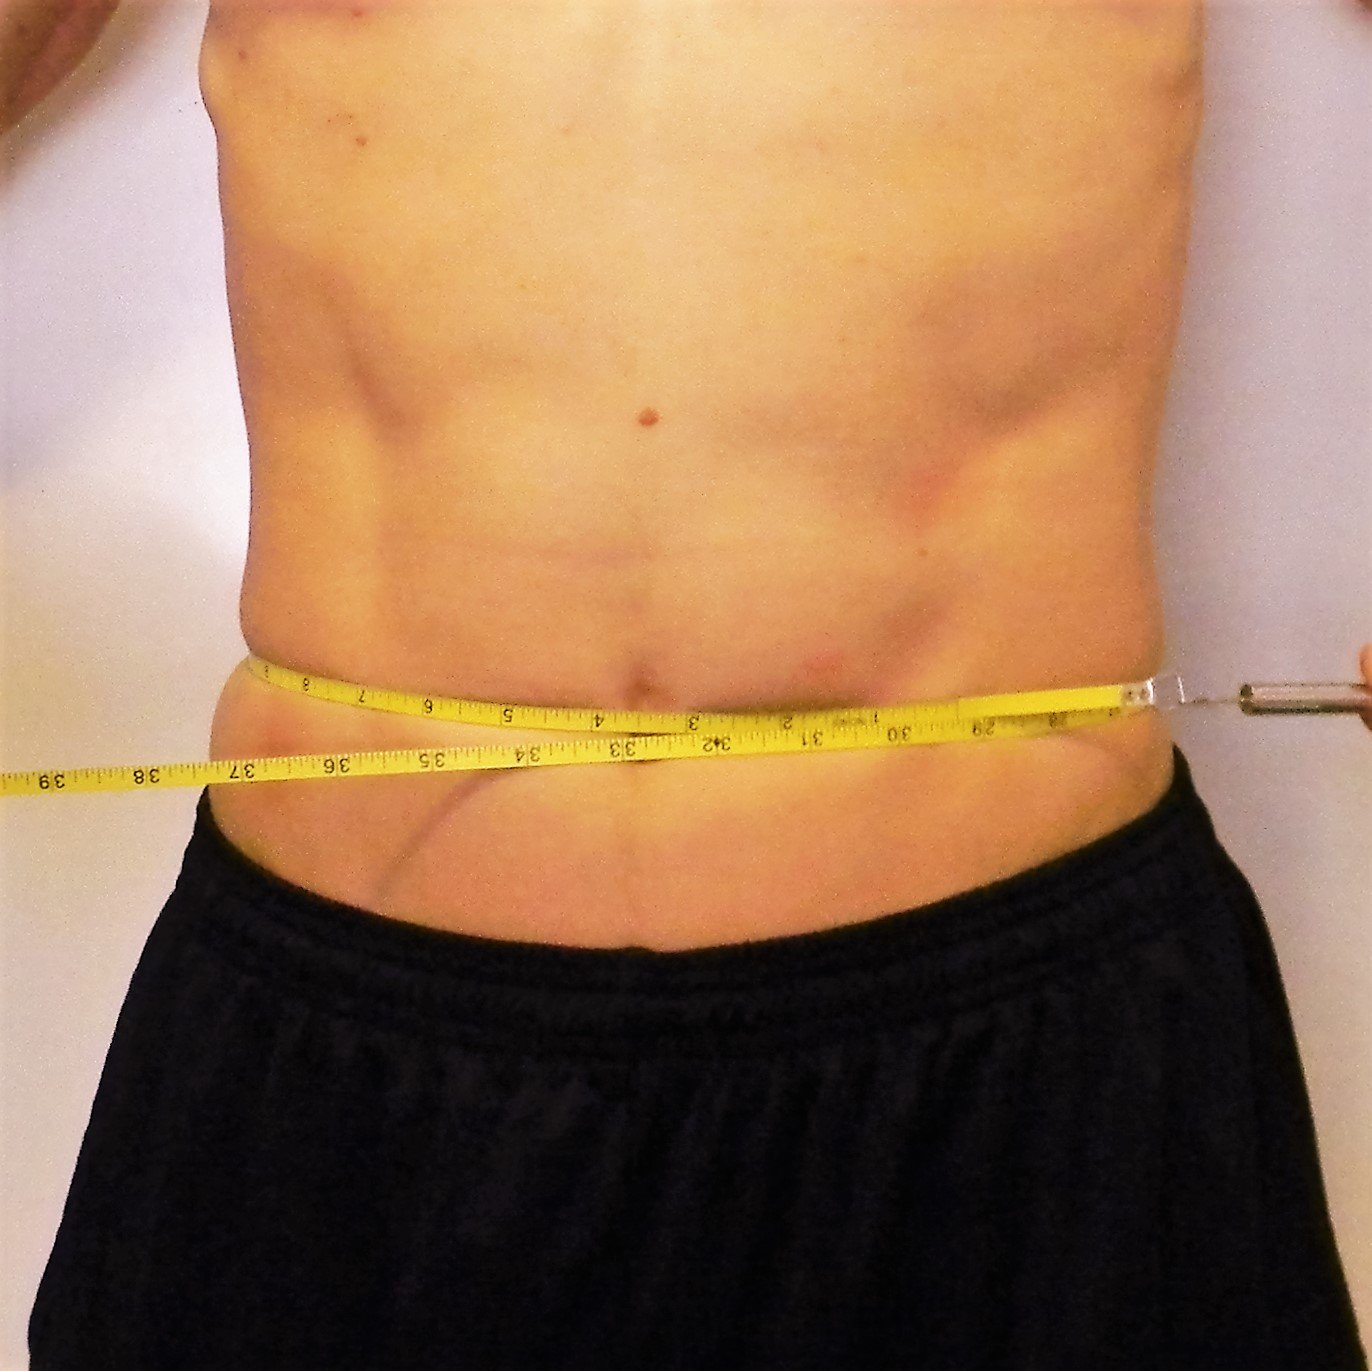 Circumference measure of the abdomen.